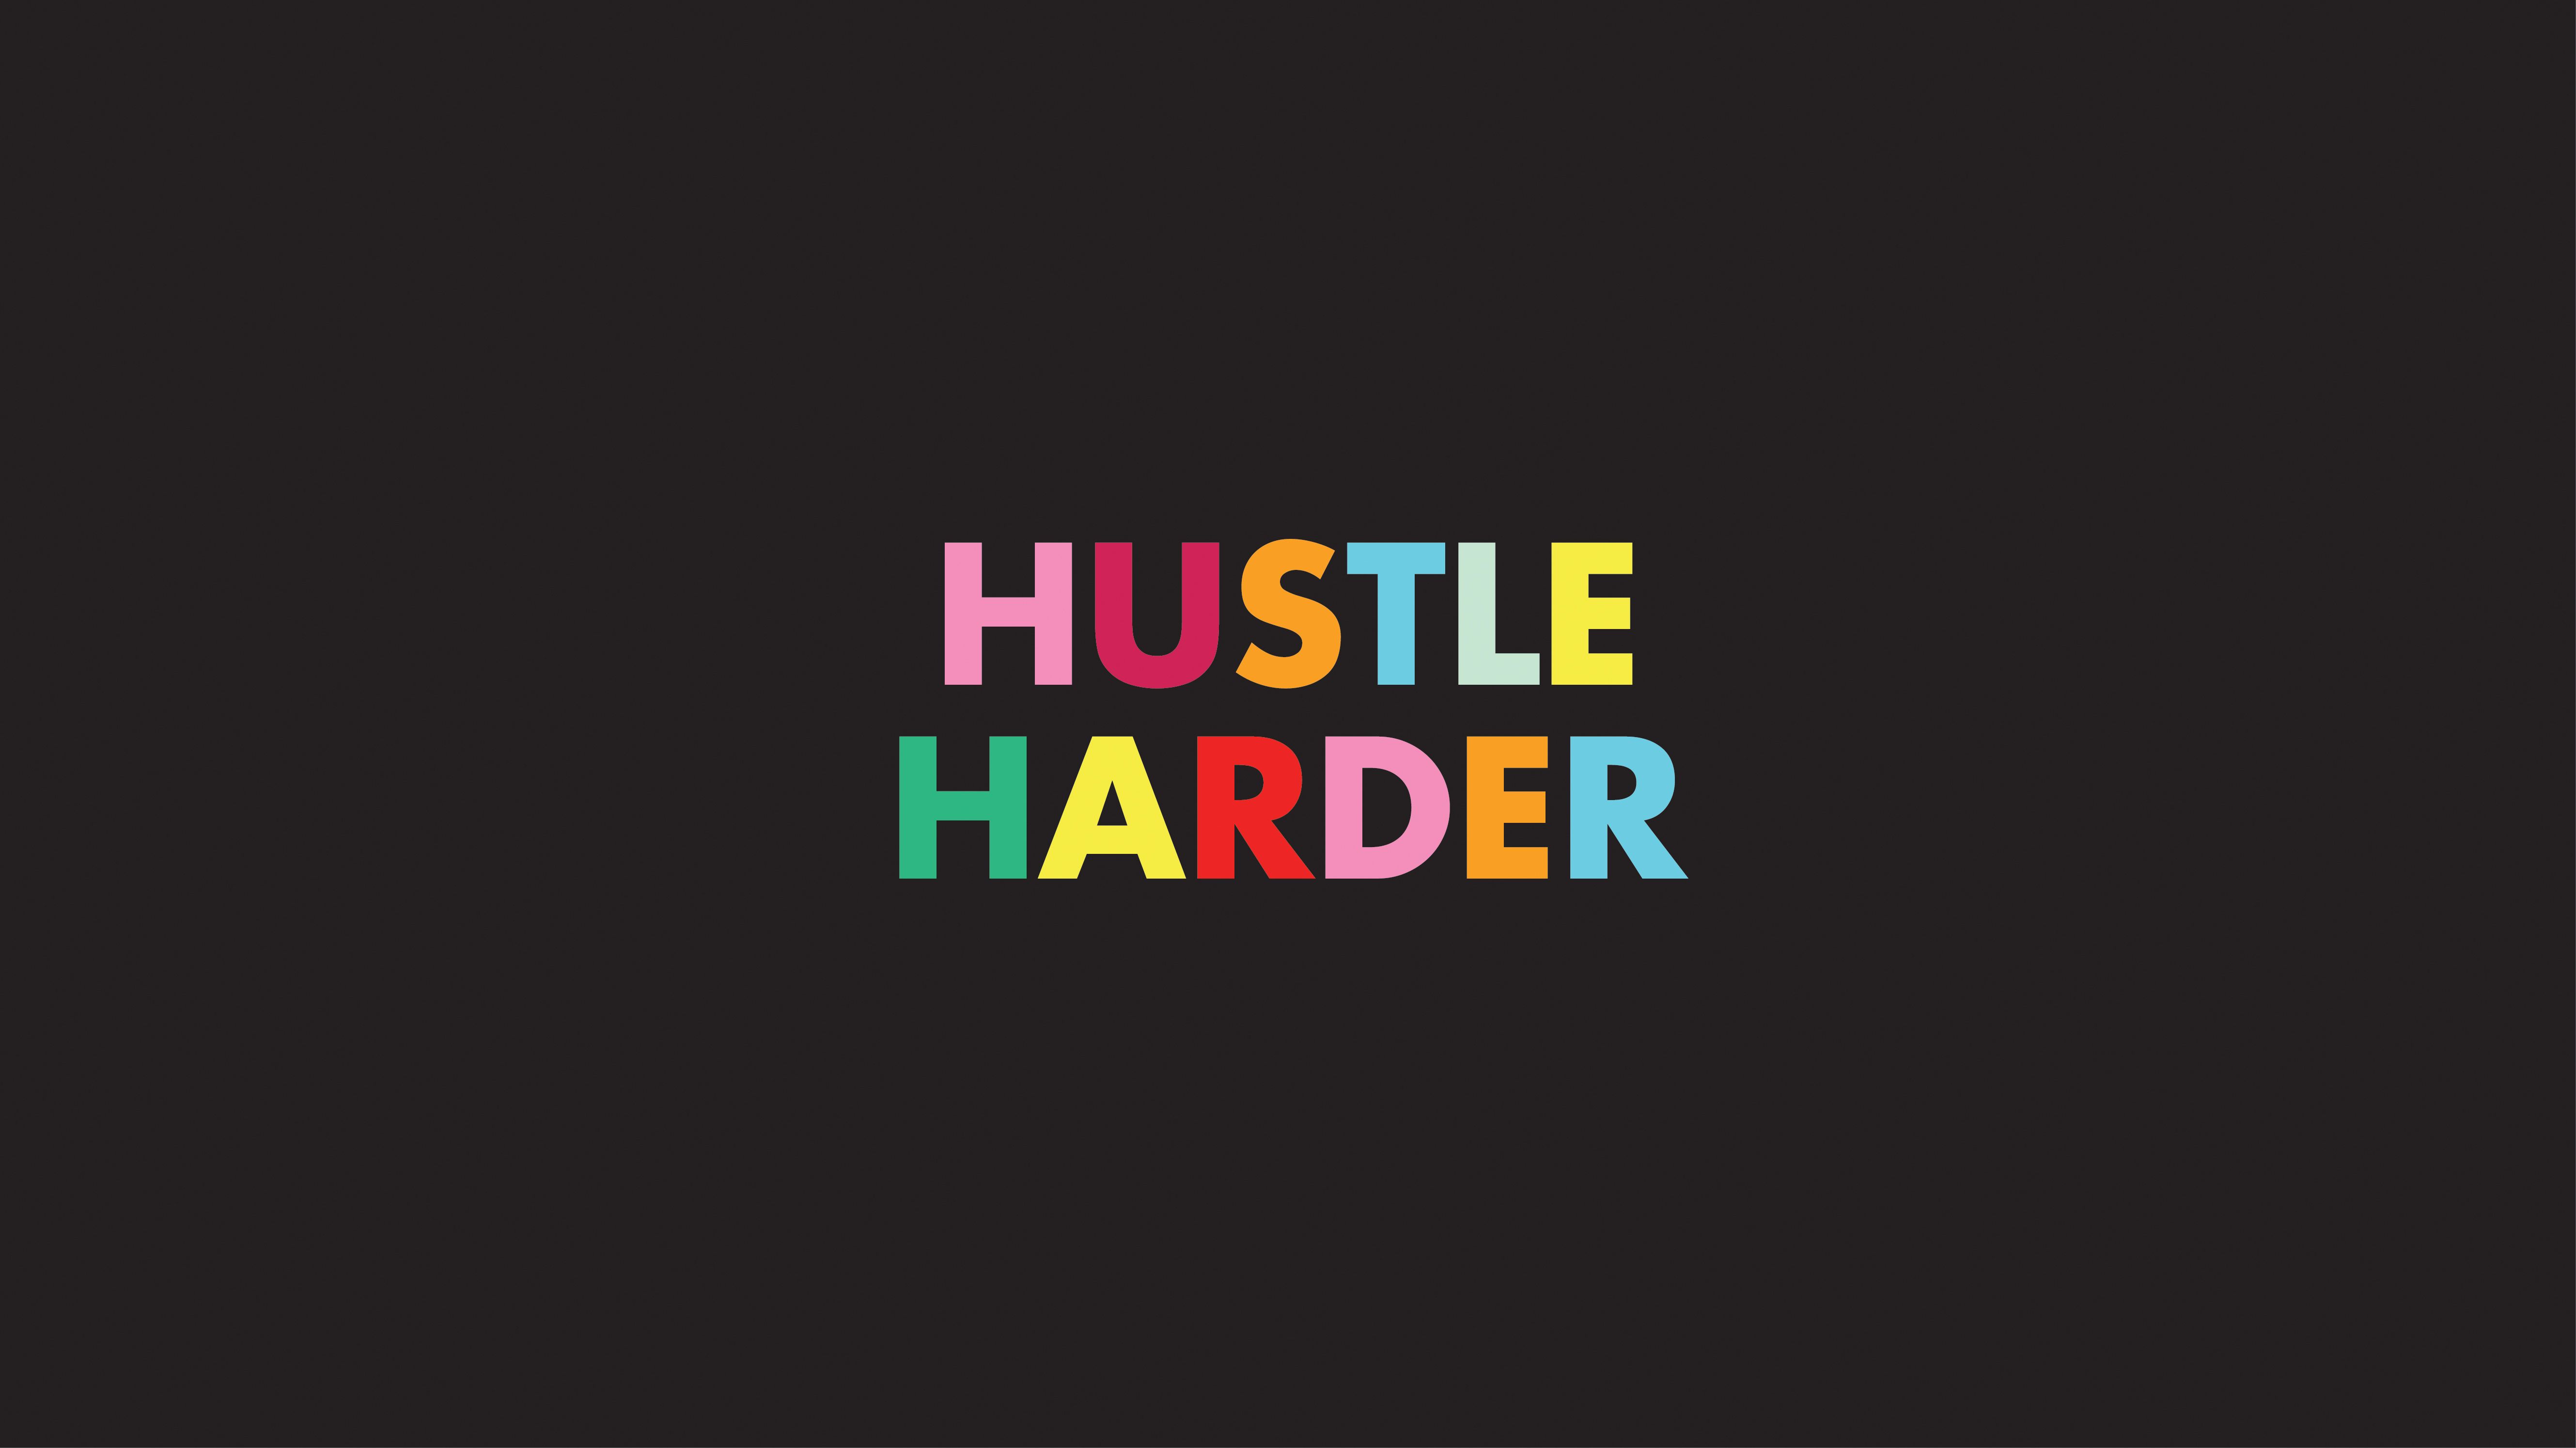 Hustle Harder Wallpaper Free Hustle Harder Background